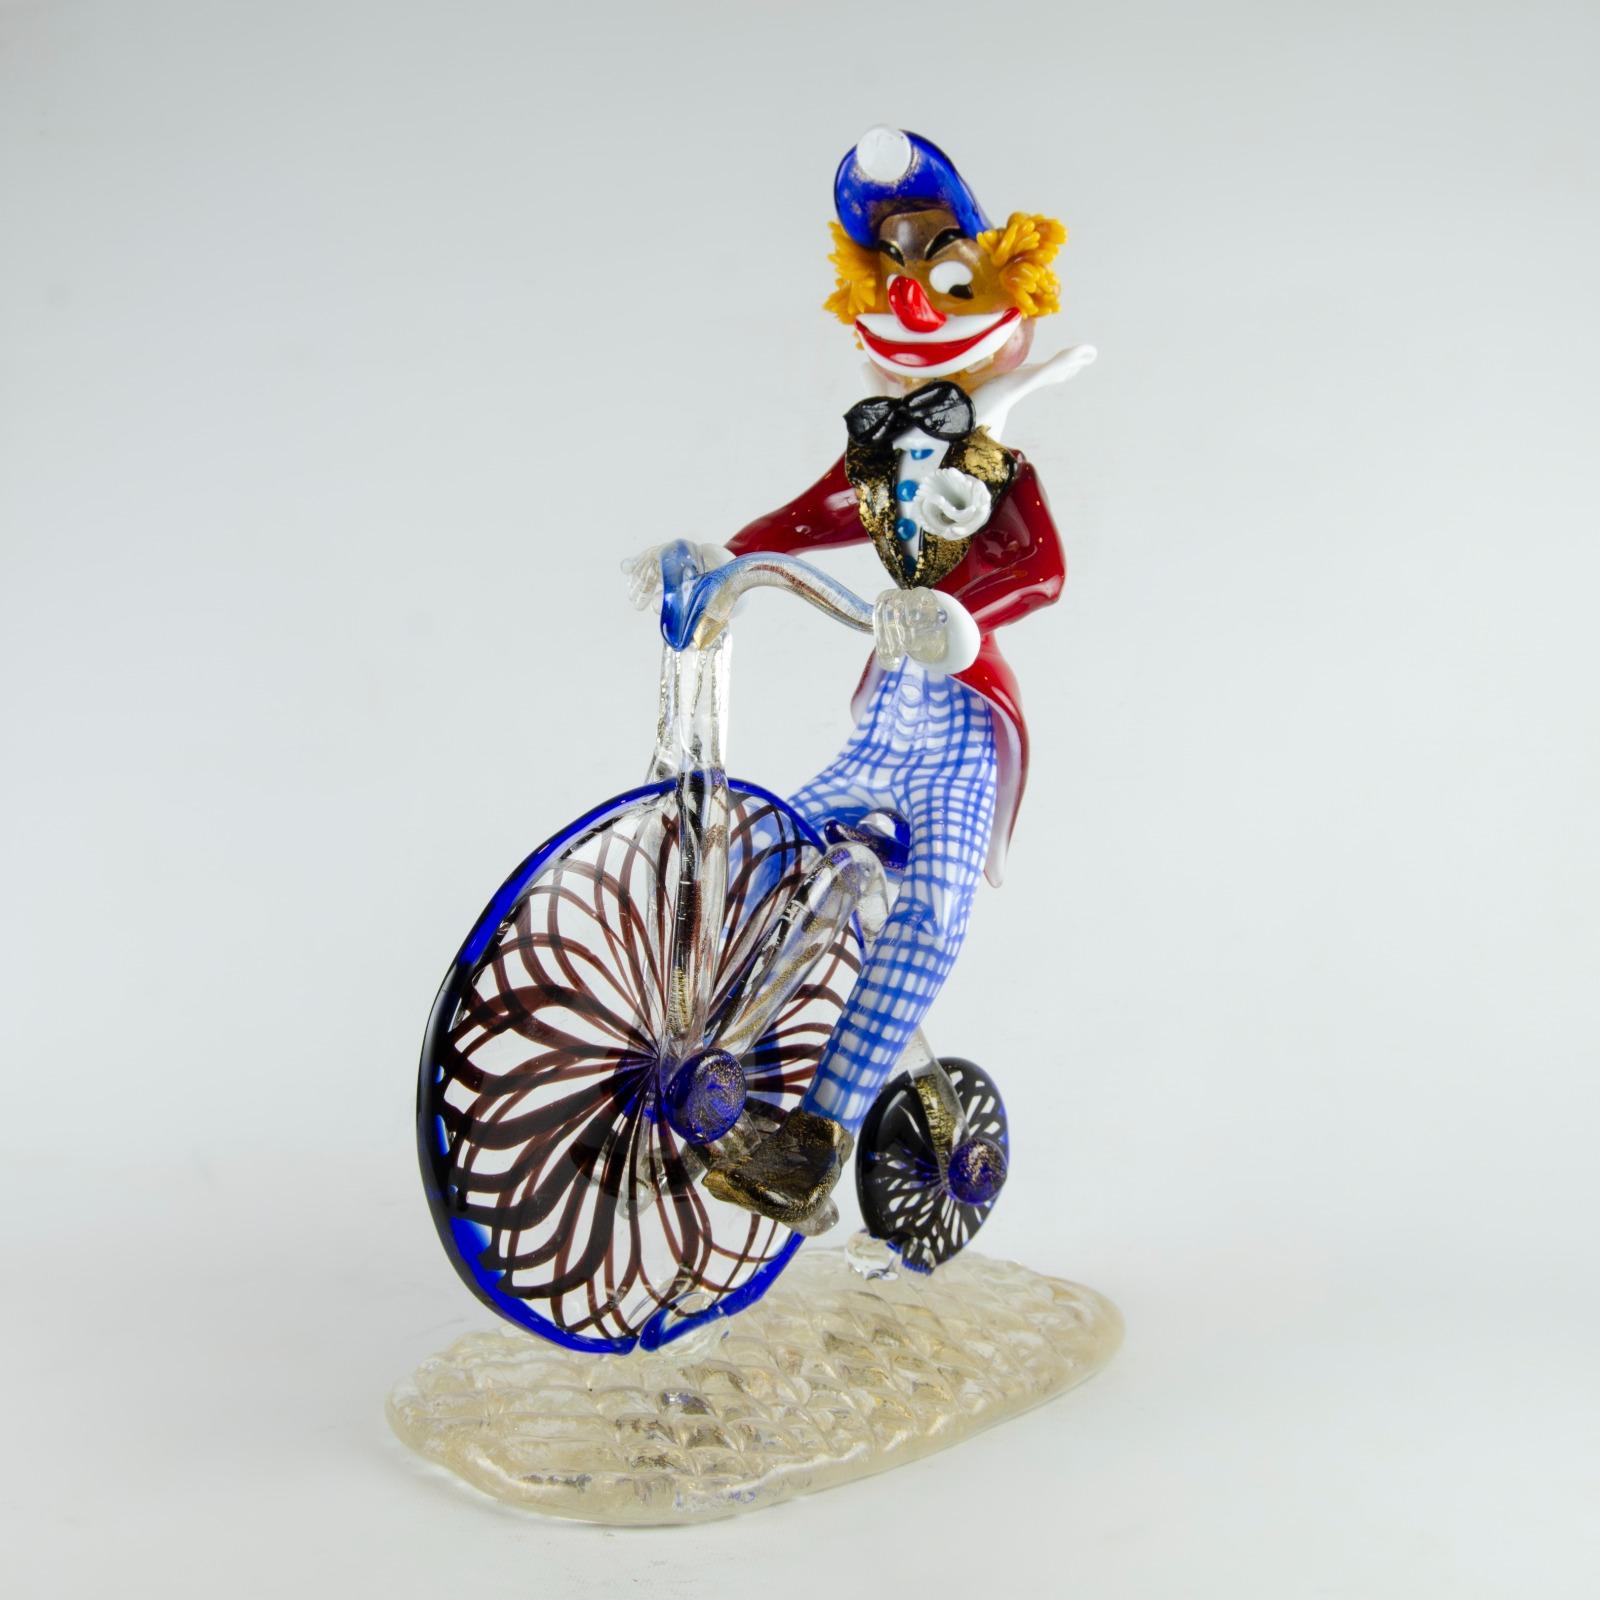 Magnifique figurine en verre de Murano représentant un clown à bicyclette, parfaite pour les collectionneurs qui leur vouent un amour particulier.

hauteur : 40 centimètres
largeur : 24 centimètres 
Profondeur : 15 centimètres